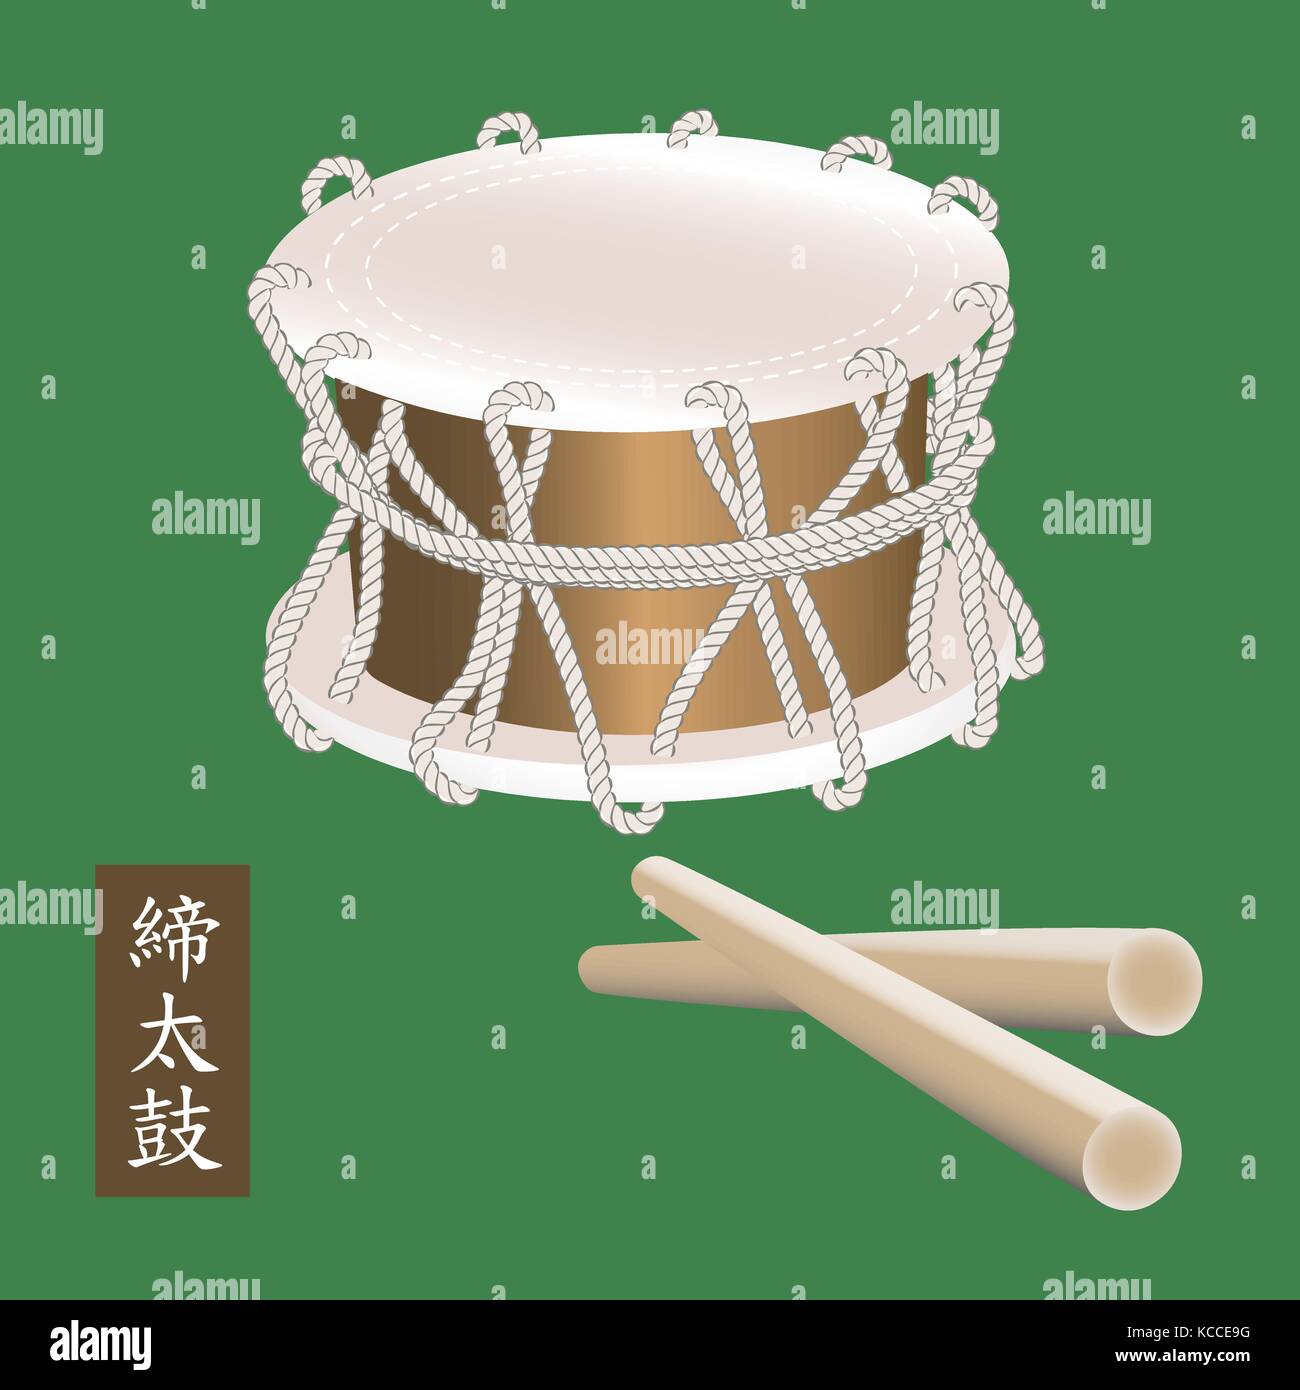 Vector illustration de l'instrument de percussion traditionnelle asiatique ou tambour taiko shime daiko. Un nom de l'ensemble tambour shime daiko est écrit en hiéroglyphes japonais. Illustration de Vecteur